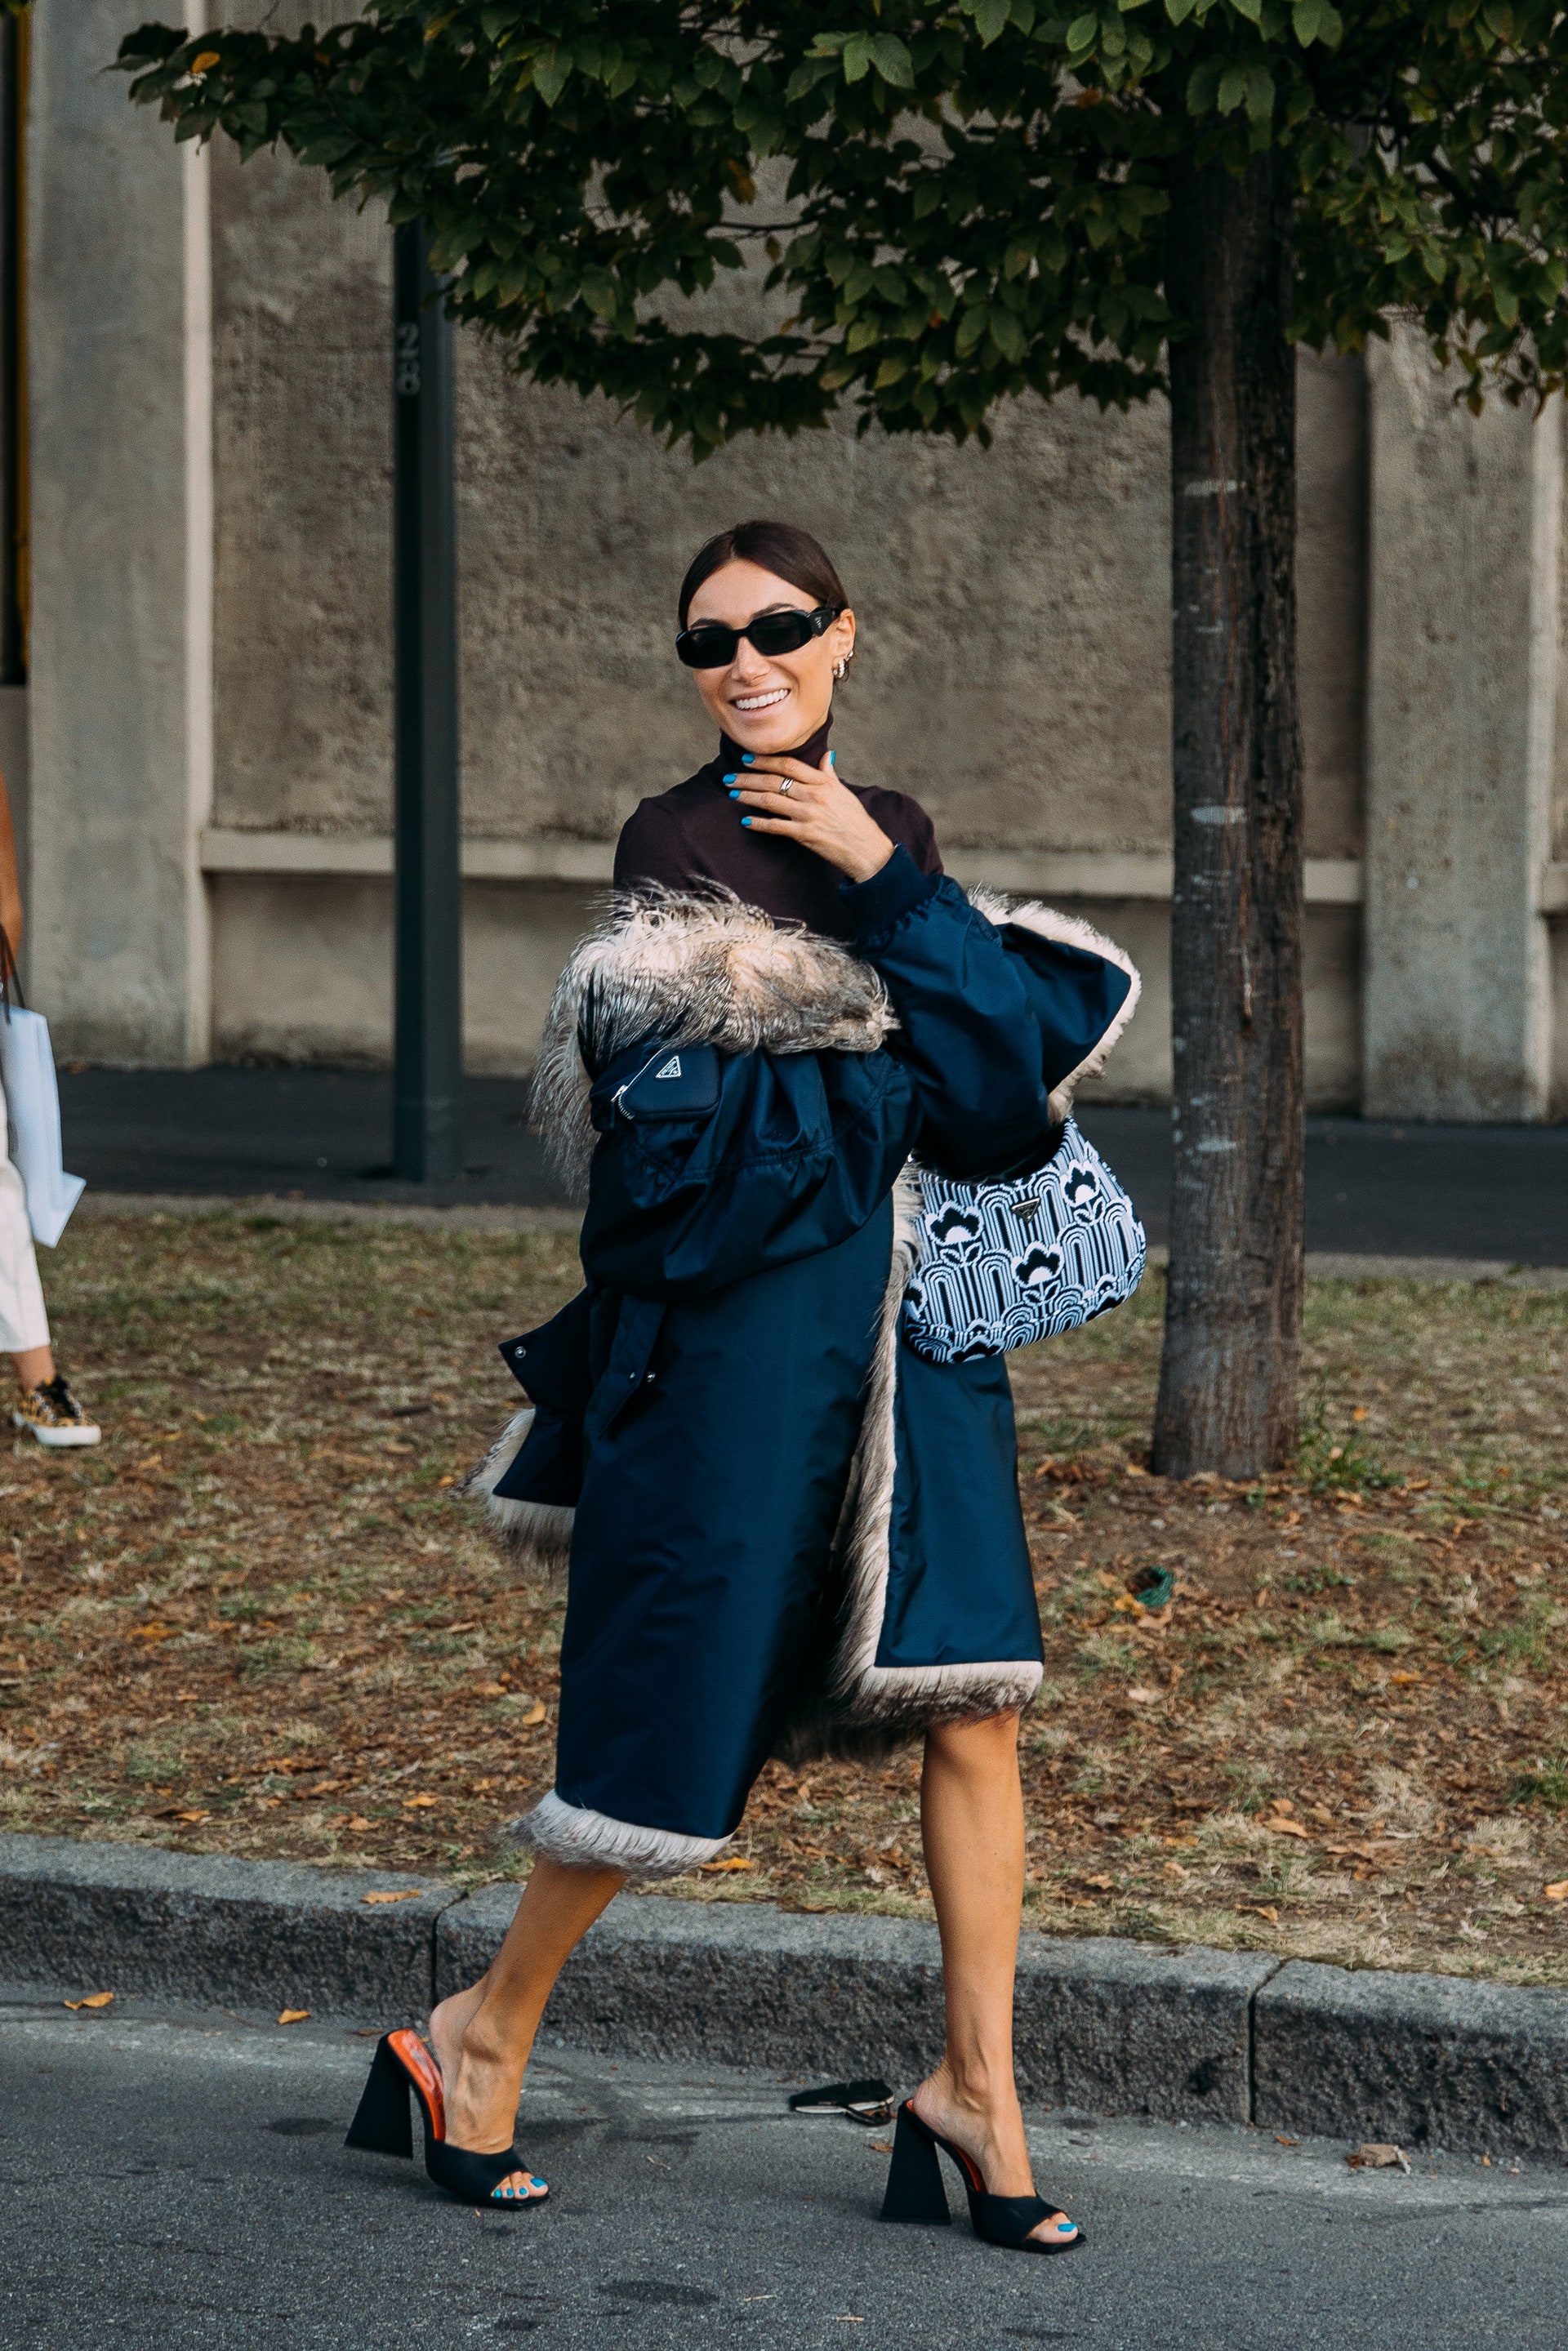 Chiếc túi xách của nhà mốt Prada mang hơi thở rất hiện đại, tinh tế. Nguồn: Vogue